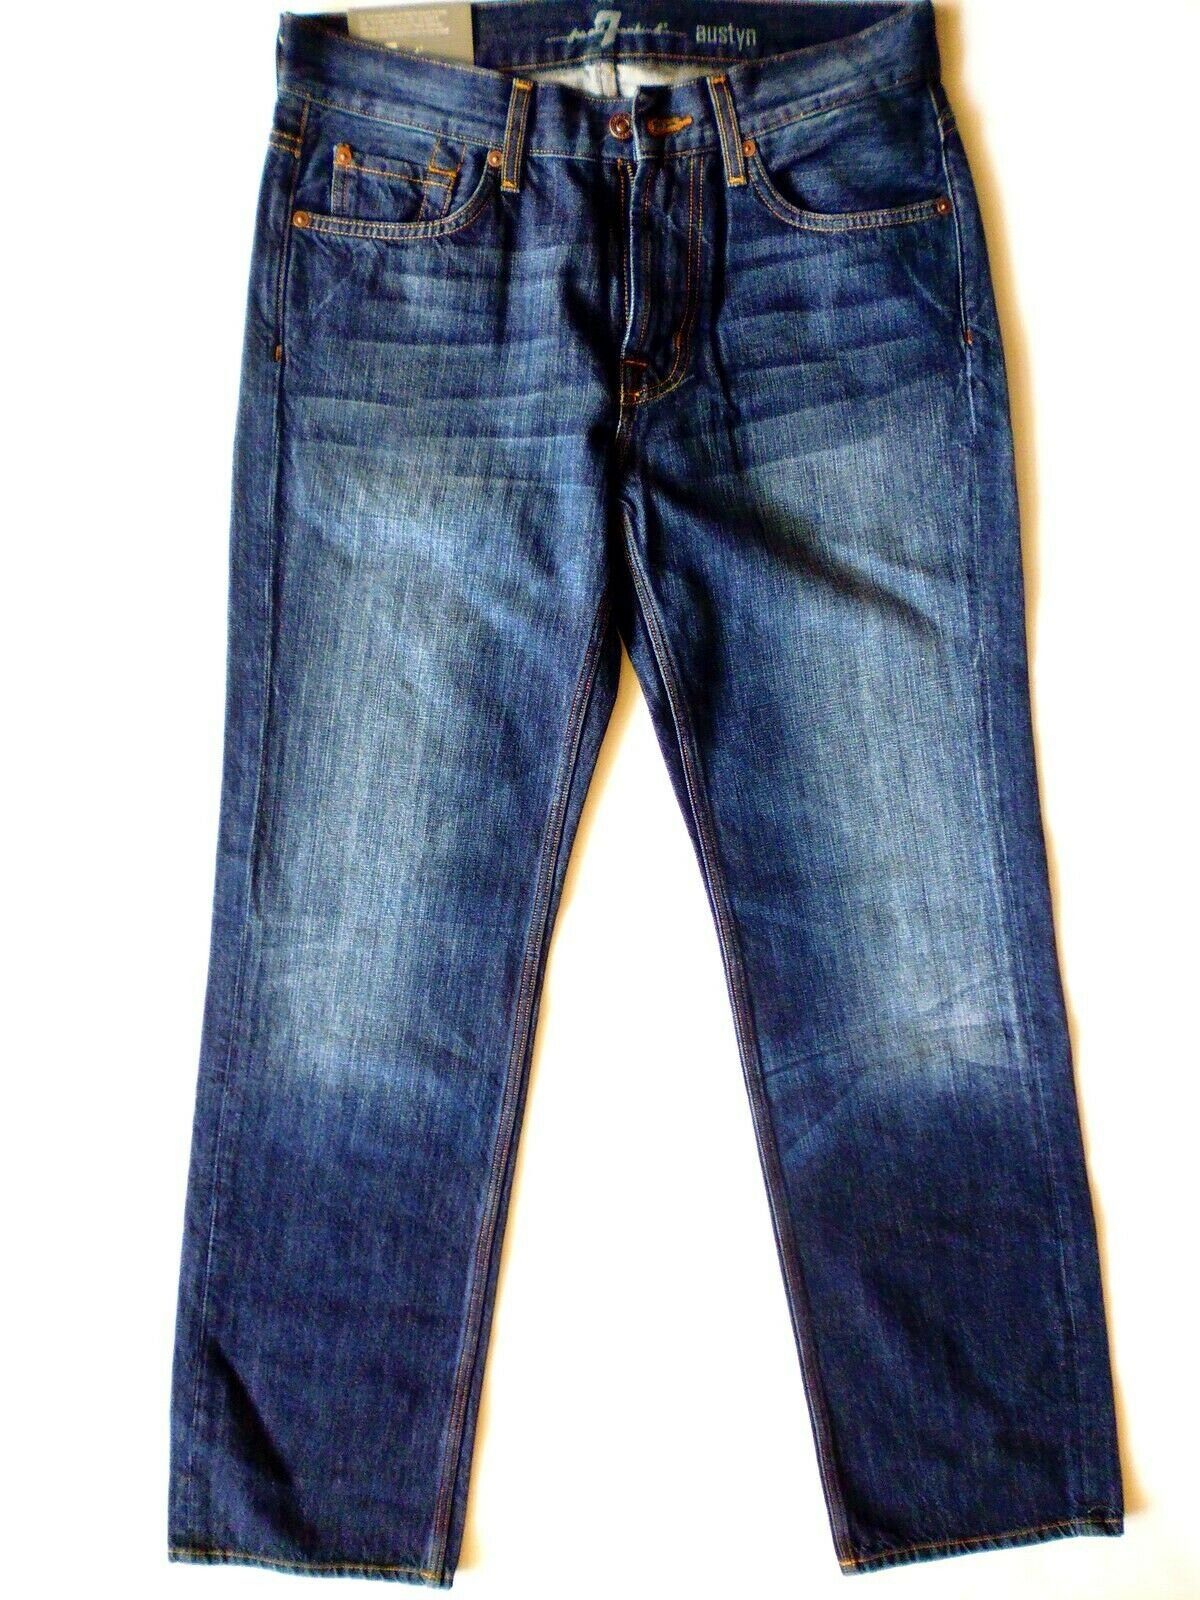 5-Pocket-Jeans 7 For All Mankind Herren Jeanshose, Austyn Dunkel Blau ausgewaschen